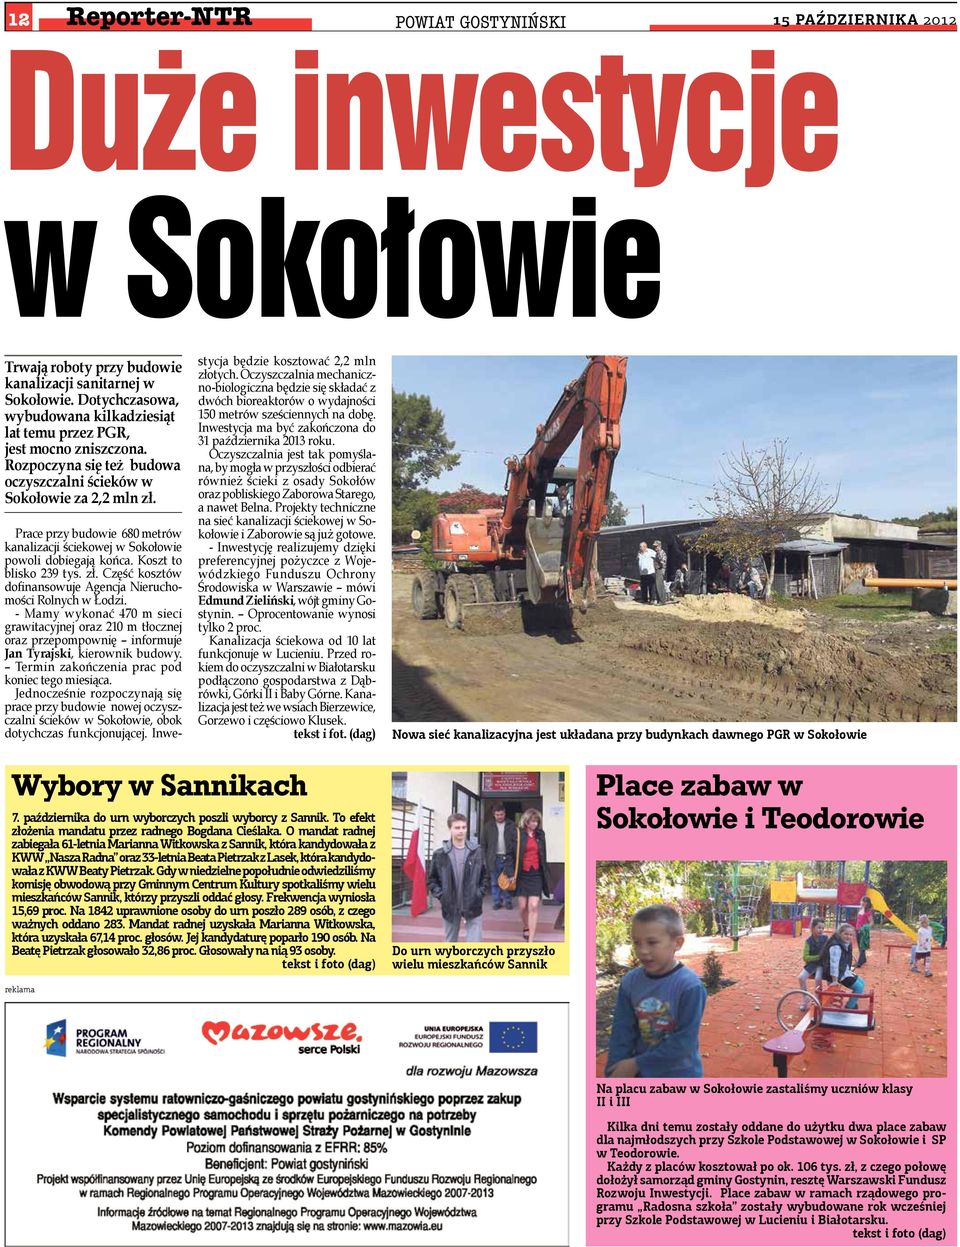 Prace przy budowie 680 metrów kanalizacji ściekowej w Sokołowie powoli dobiegają końca. Koszt to blisko 239 tys. zł. Część kosztów dofinansowuje Agencja Nieruchomości Rolnych w Łodzi.